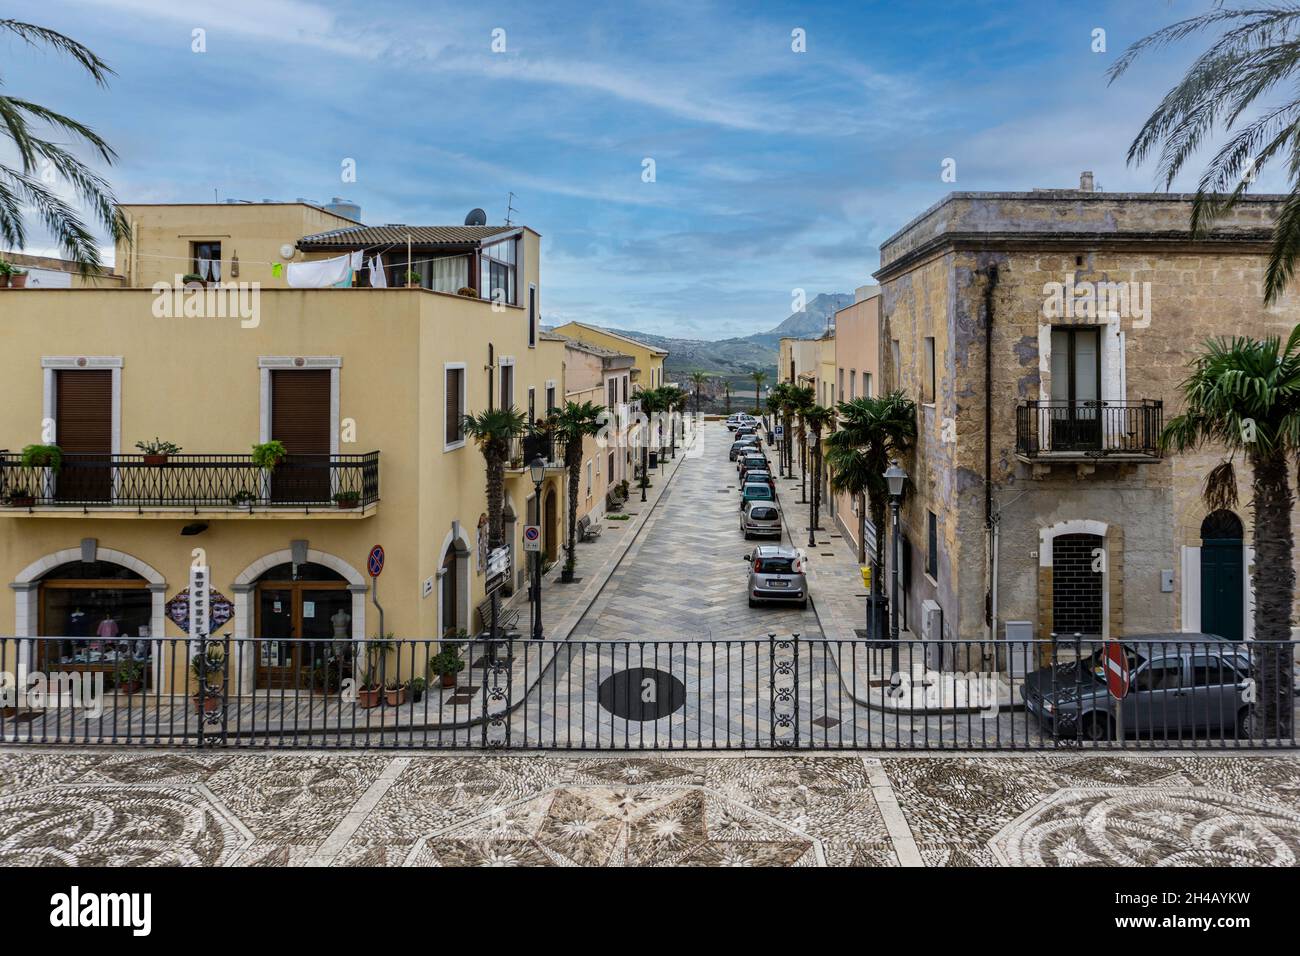 Die modernen Straßen von Custonaci, Sizilien, Italien, die hier im Gegensatz zu dem aus dem 16. Jahrhundert stammenden Mauerwerk/Kopfsteinpflaster stehen. Stockfoto